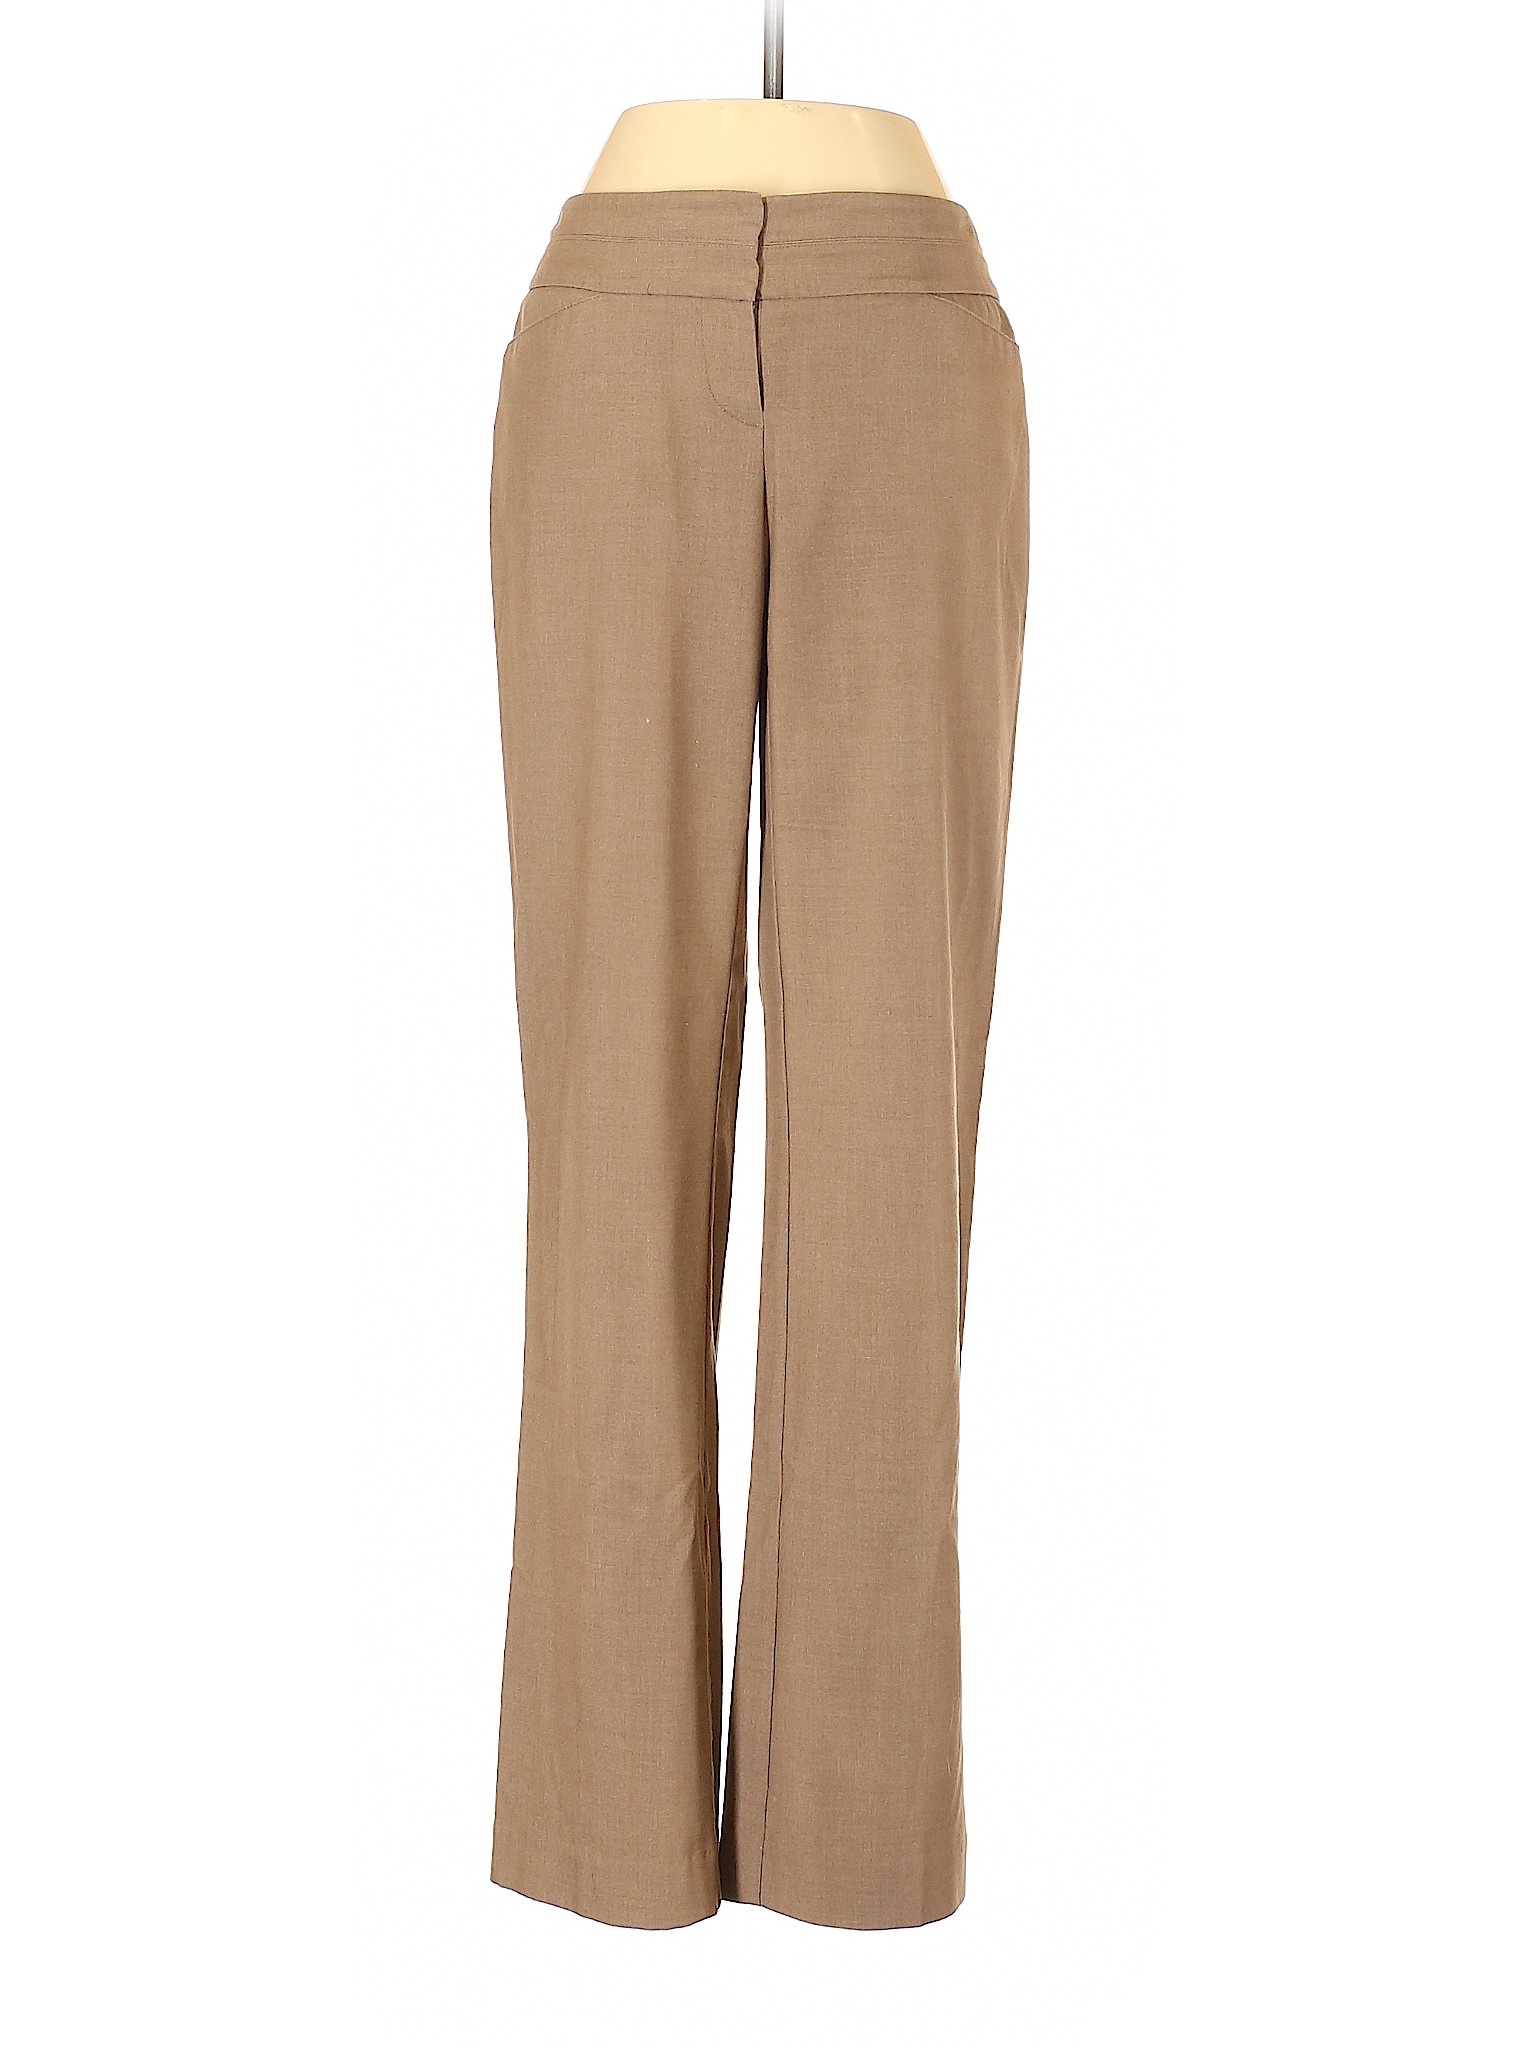 Ann Taylor LOFT Outlet Women Brown Dress Pants 0 | eBay